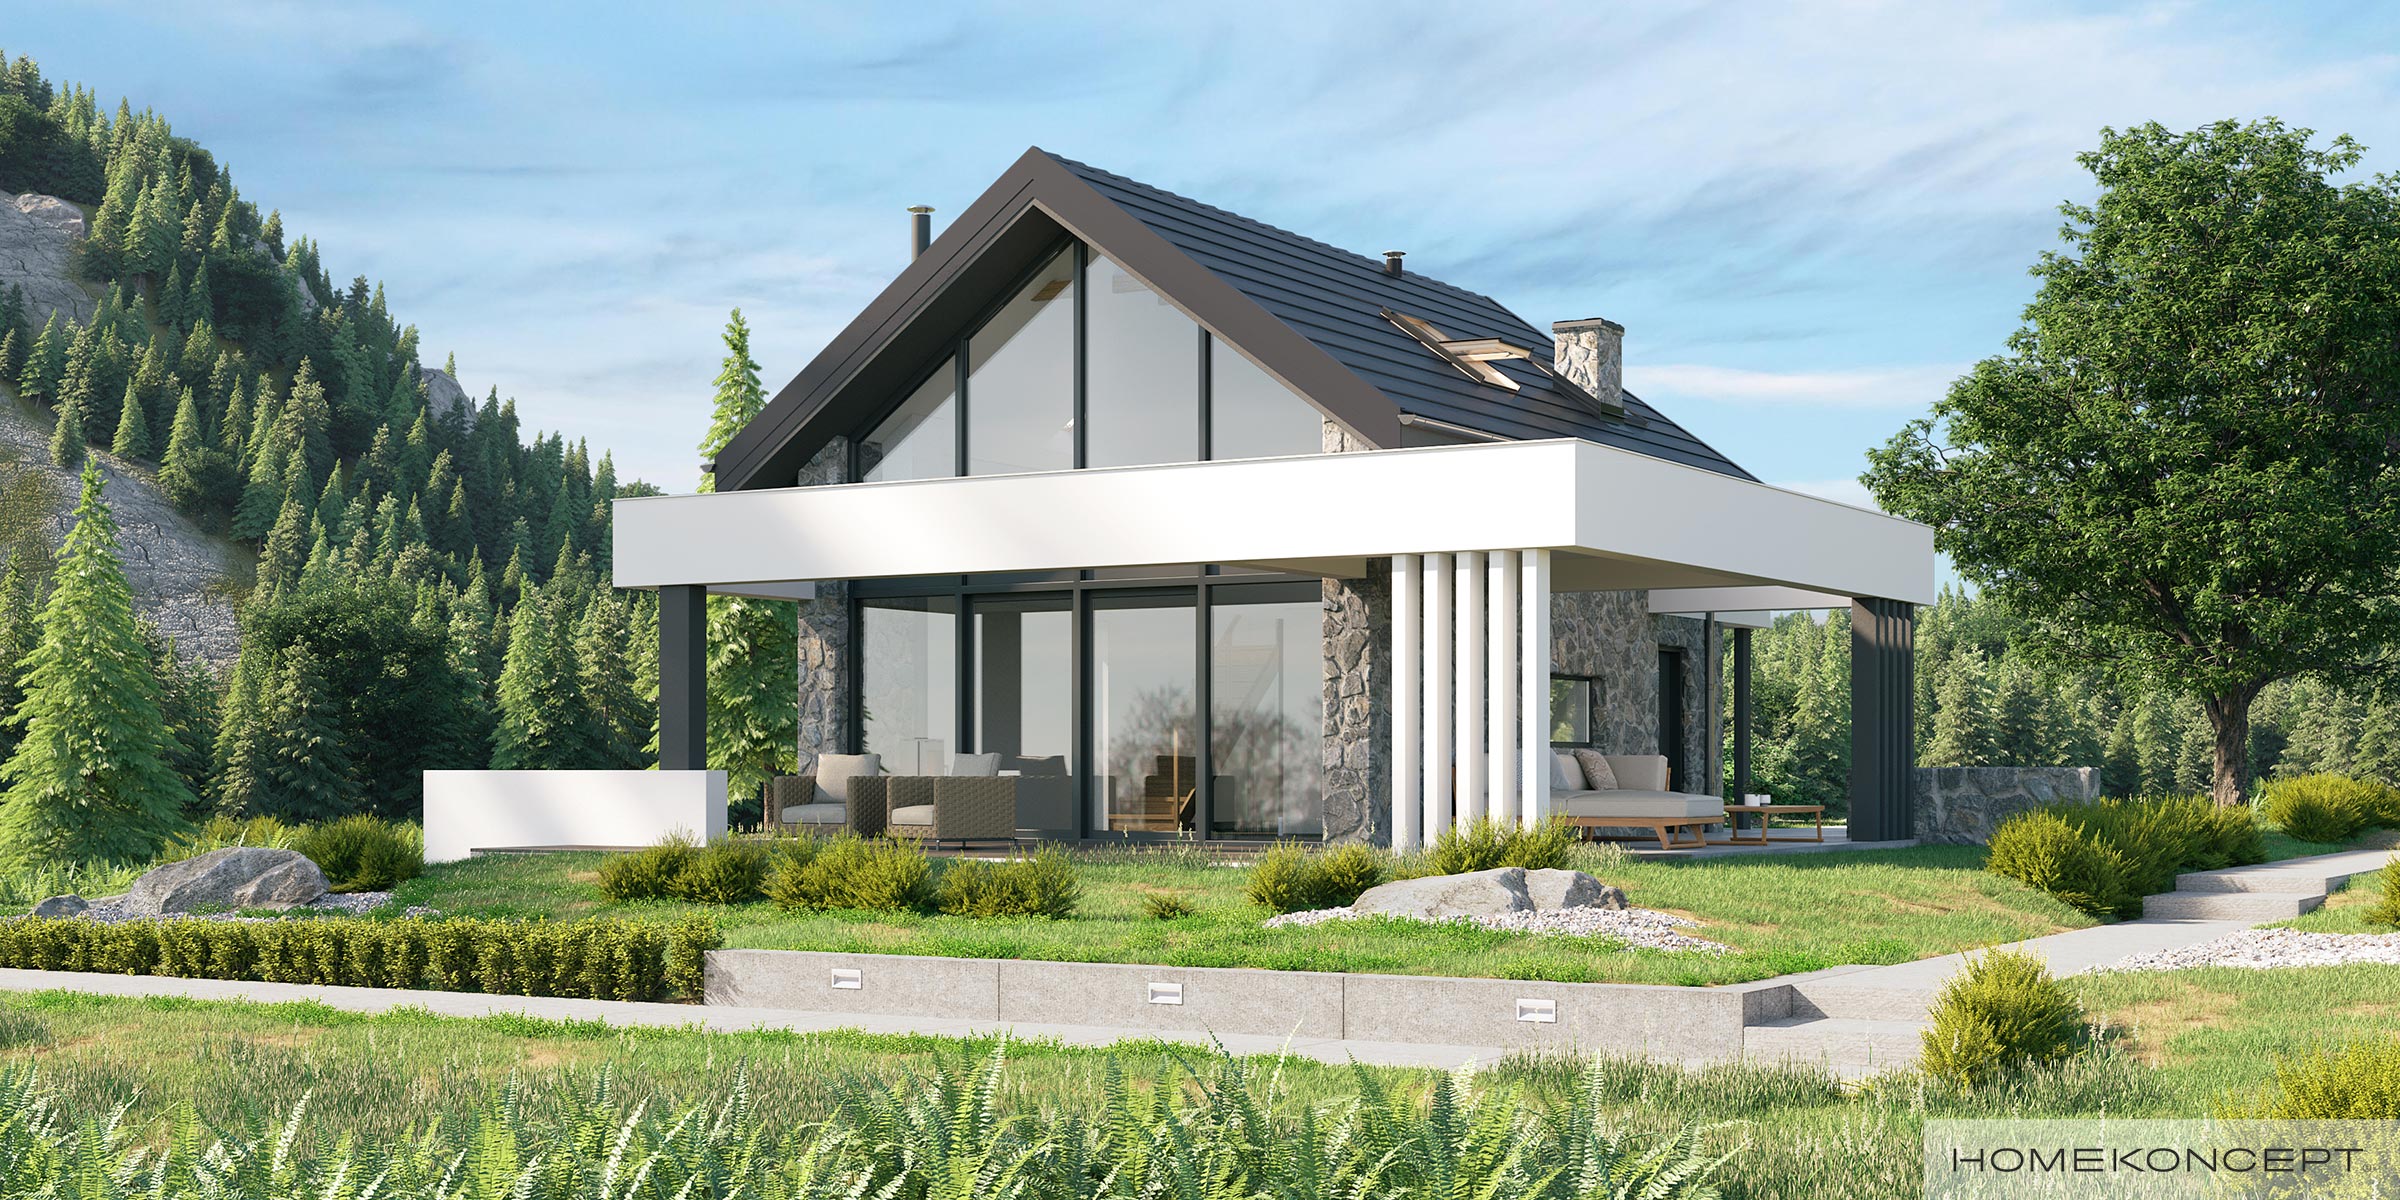 Projekt domu całorocznego w kamiennej elewacji – czy własny dom letniskowy to dobry pomysł